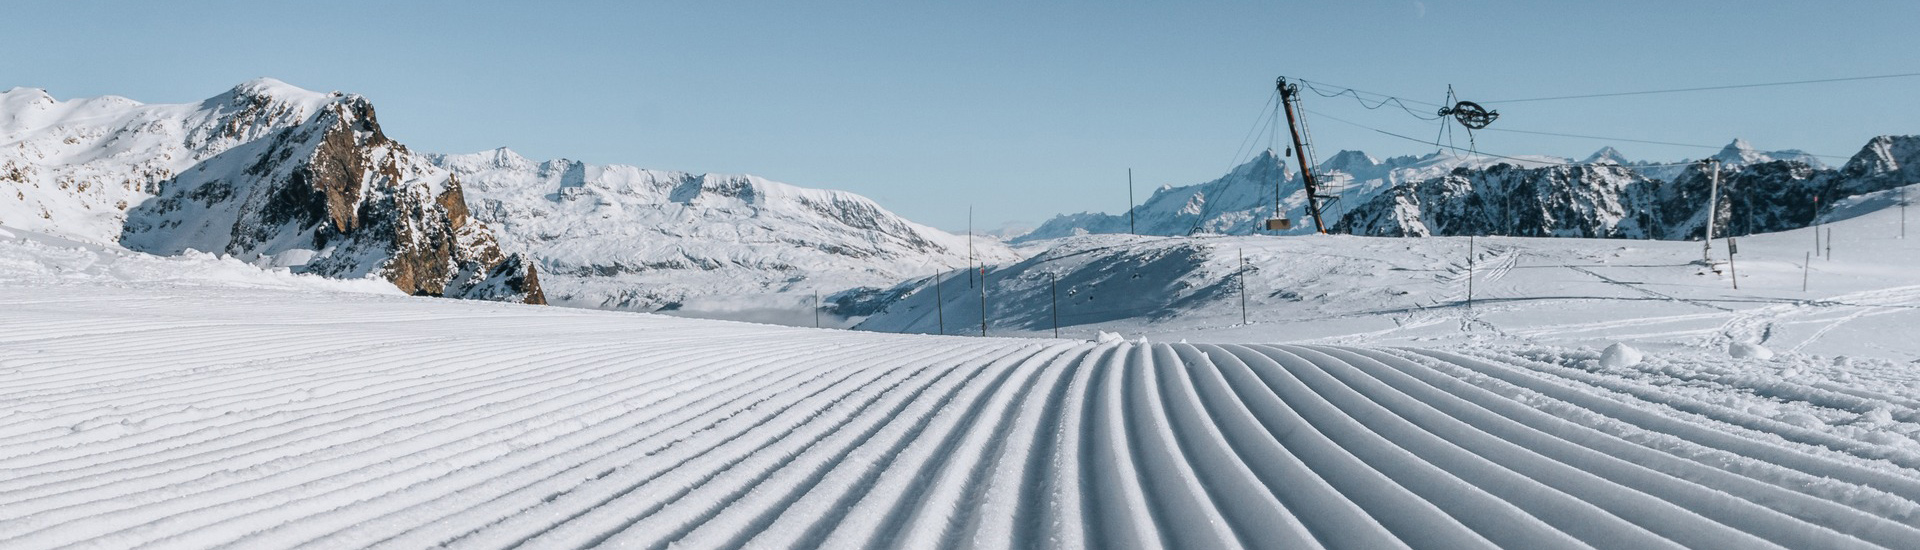 Chamrousse skipass ski slope winter mountain resort grenoble isere lyon rhone french alps france - © CH - OT Chamrousse